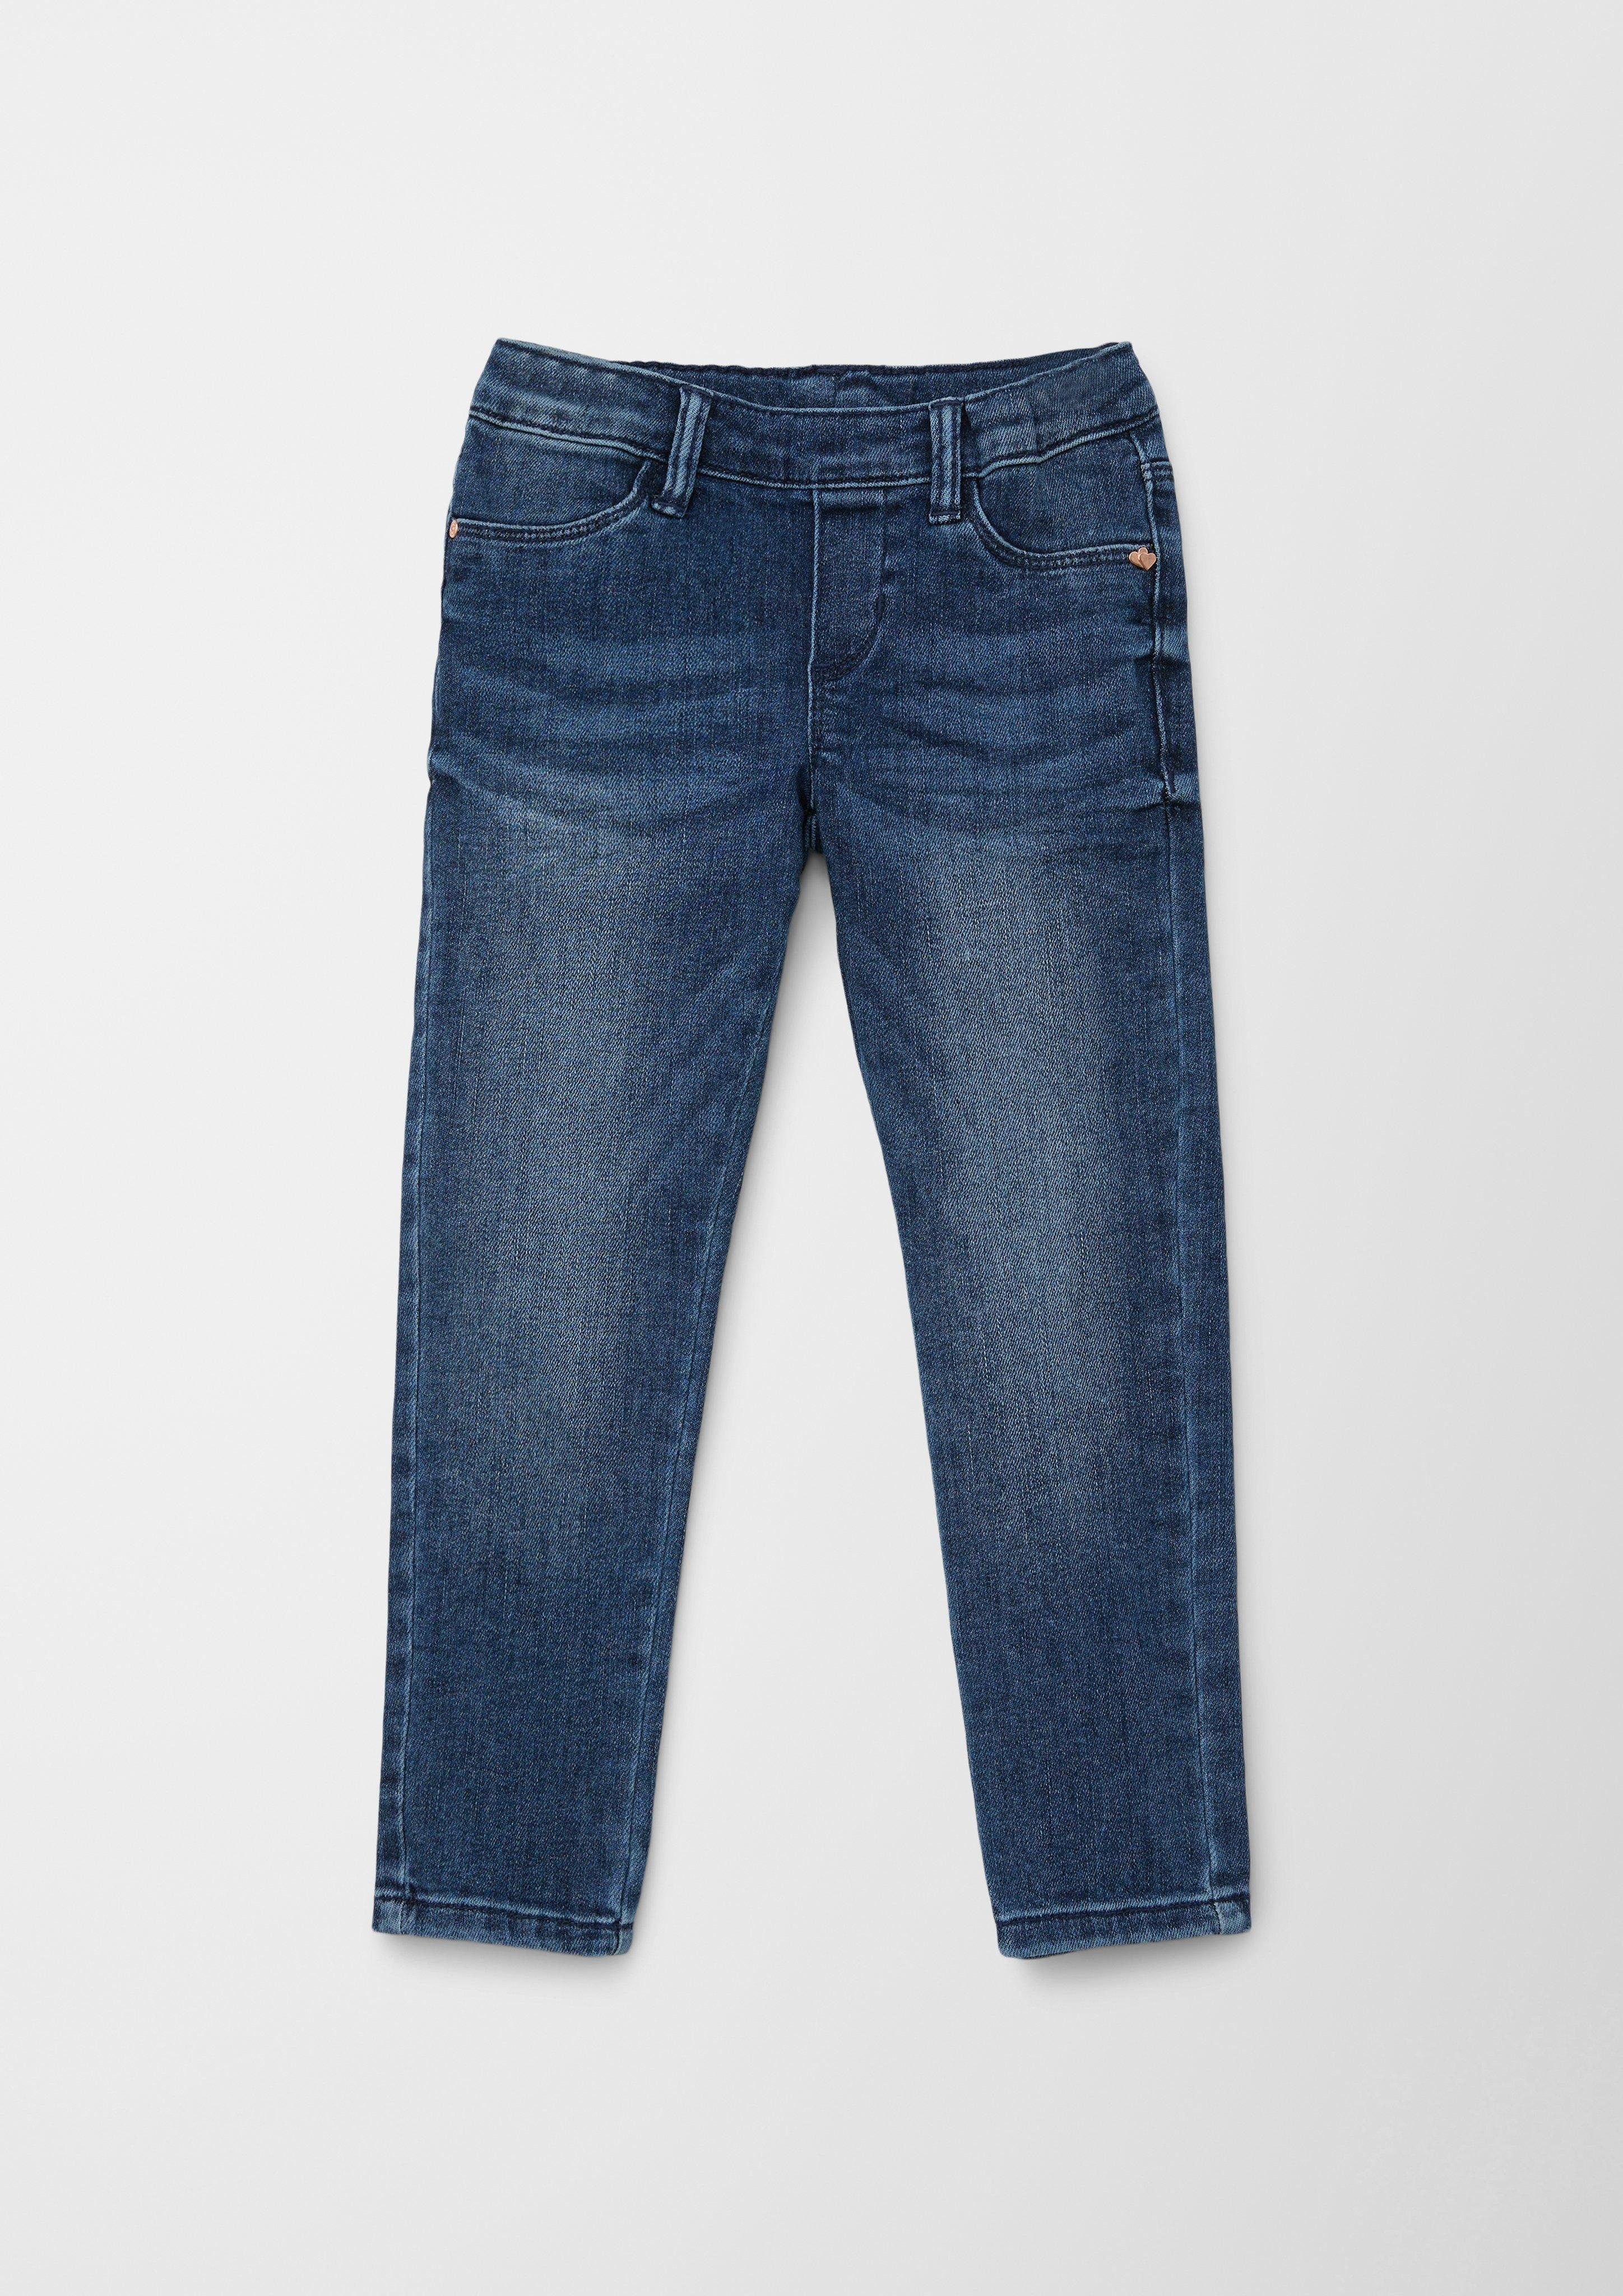 s.Oliver Junior s.Oliver Stoffhose Jeans Treggings / Slim Fit / Mid Rise / Slim Leg / Elastikbund Waschung